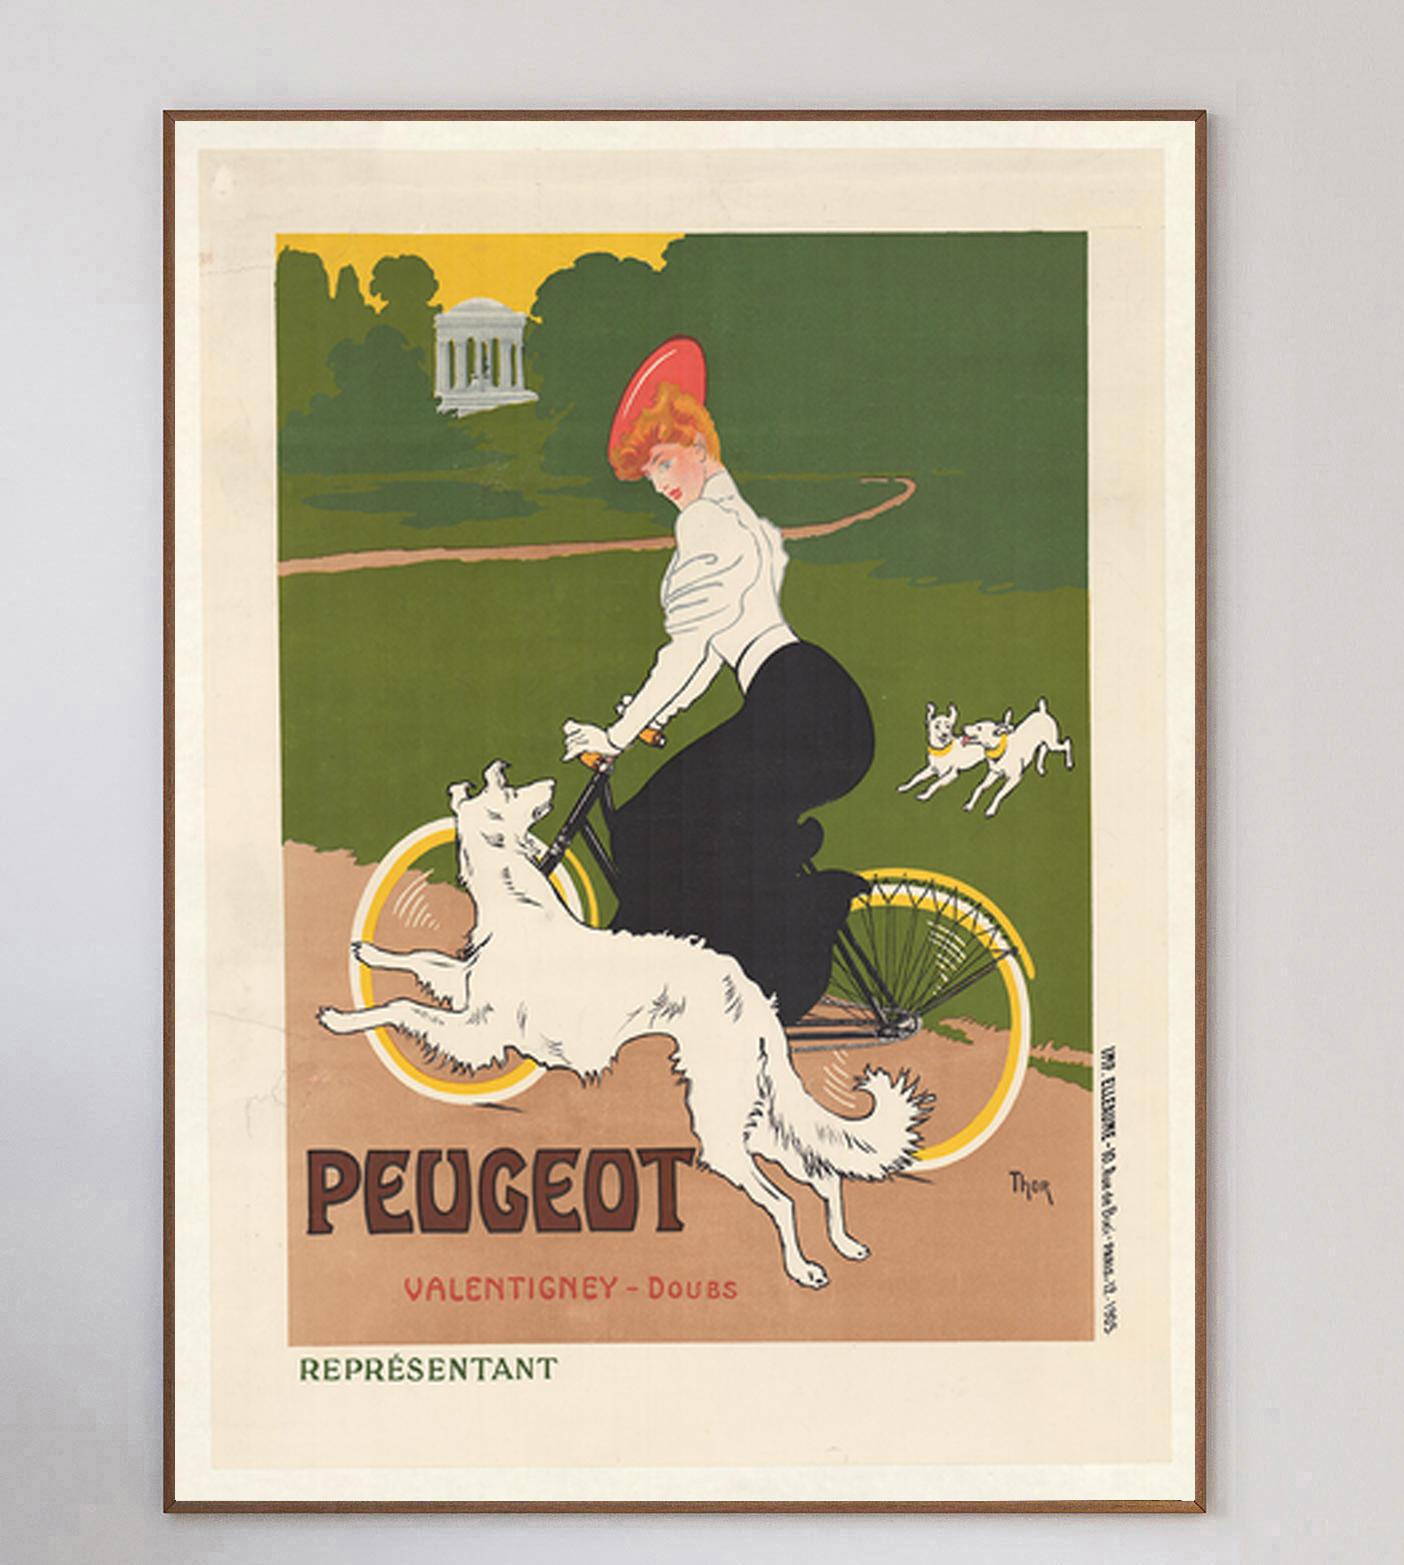 Cette magnifique affiche a été créée en 1905 par le peintre et illustrateur allemand Walter Thor. Promouvant les Cycles Peugeot dans la commune de Valentigney, dans le Doubs, en France, l'œuvre d'art montre une femme faisant du vélo avec ses chiens